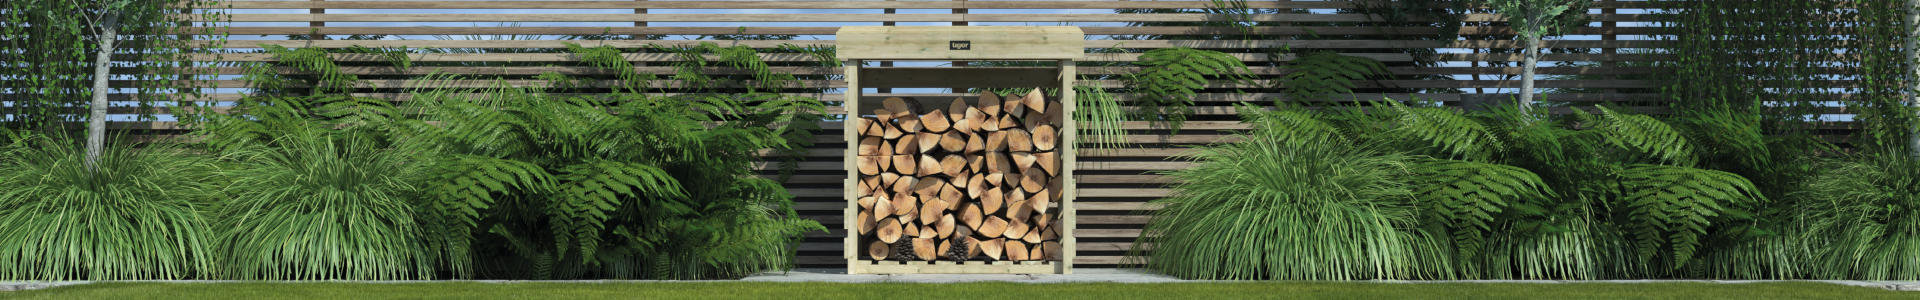 Wooden Storage Sheds